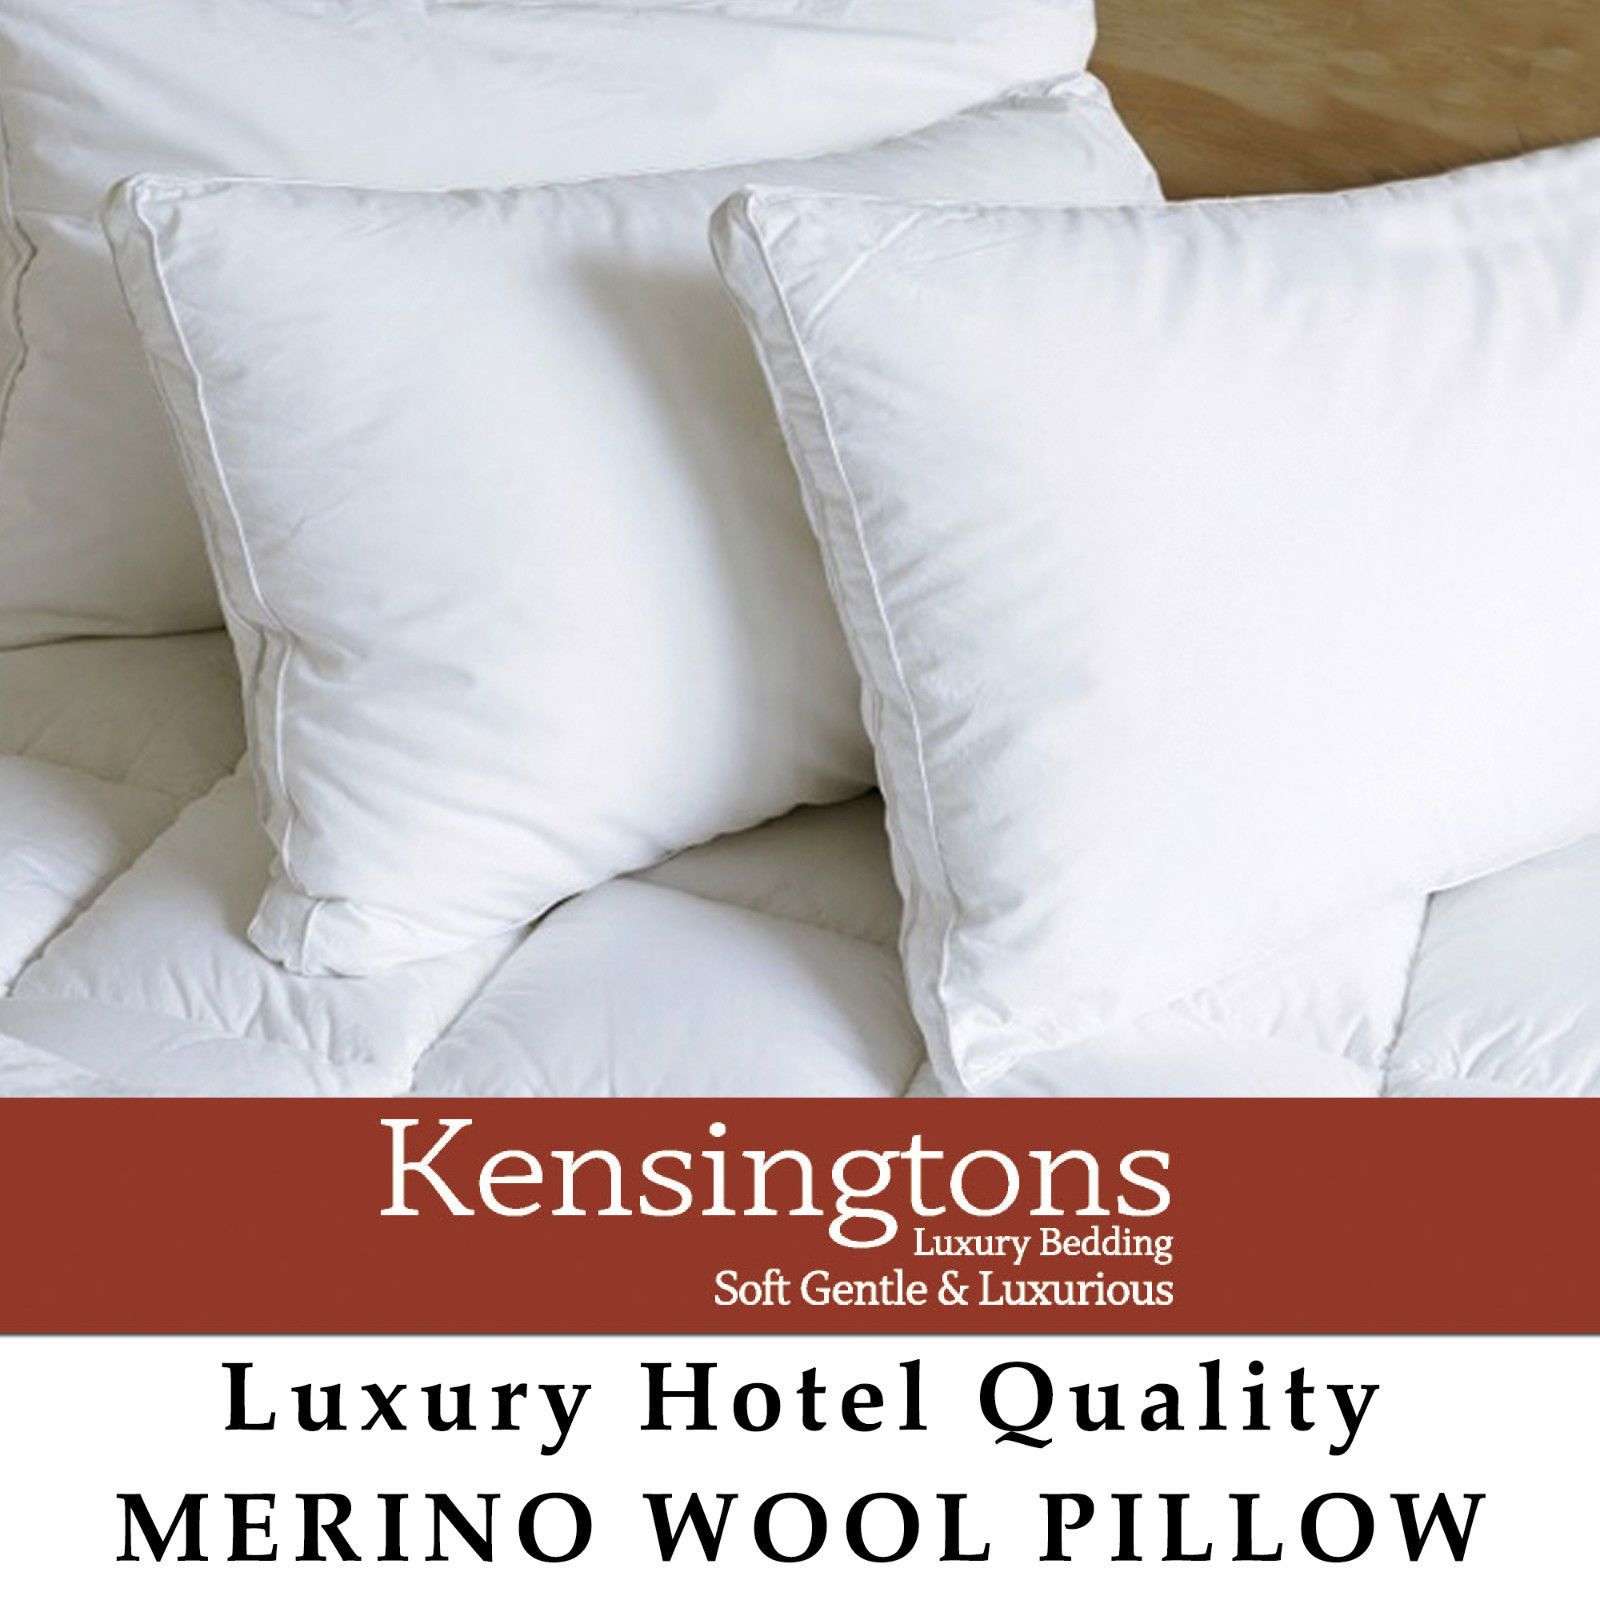 400-T/C-Merino-Wool-Filled-Pillows-1000G